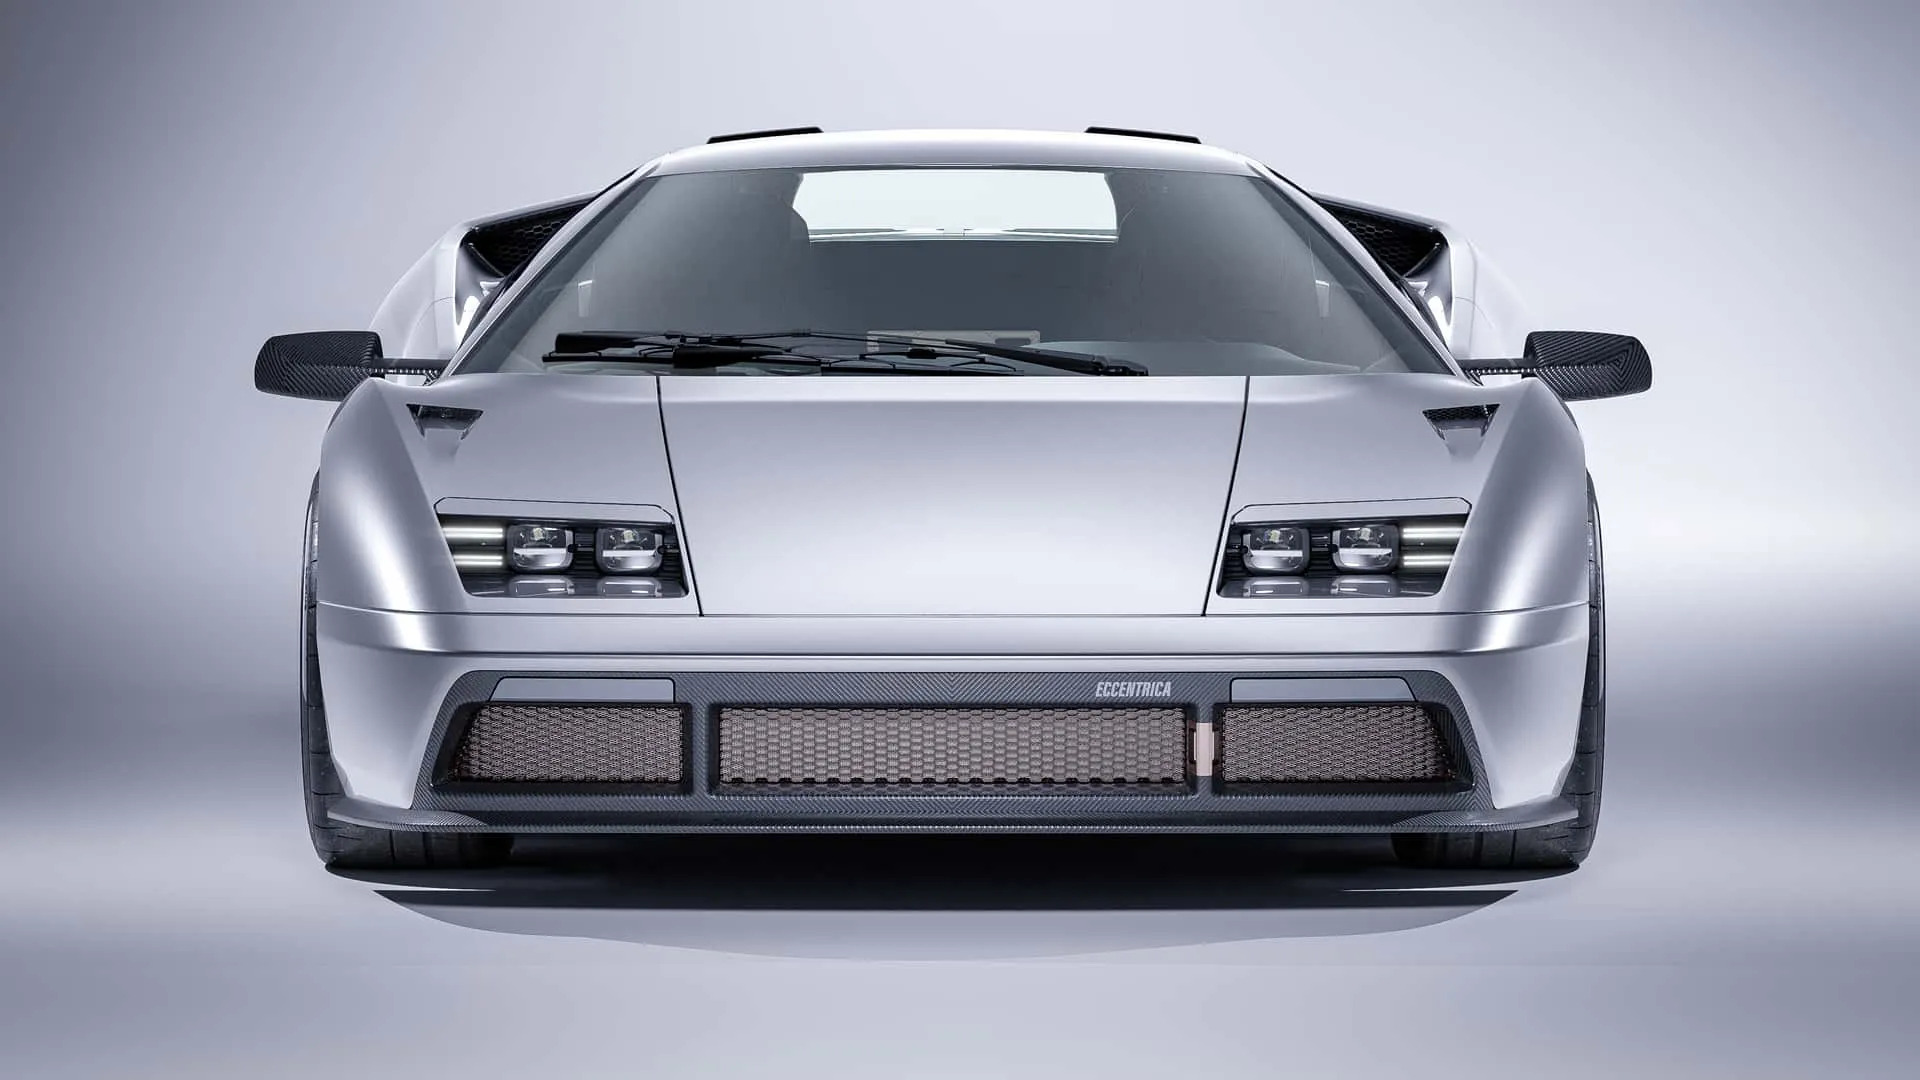 El Eccentrica Lamborghini Diablo es una ambiciosa interpretación moderna del mítico deportivo italiano